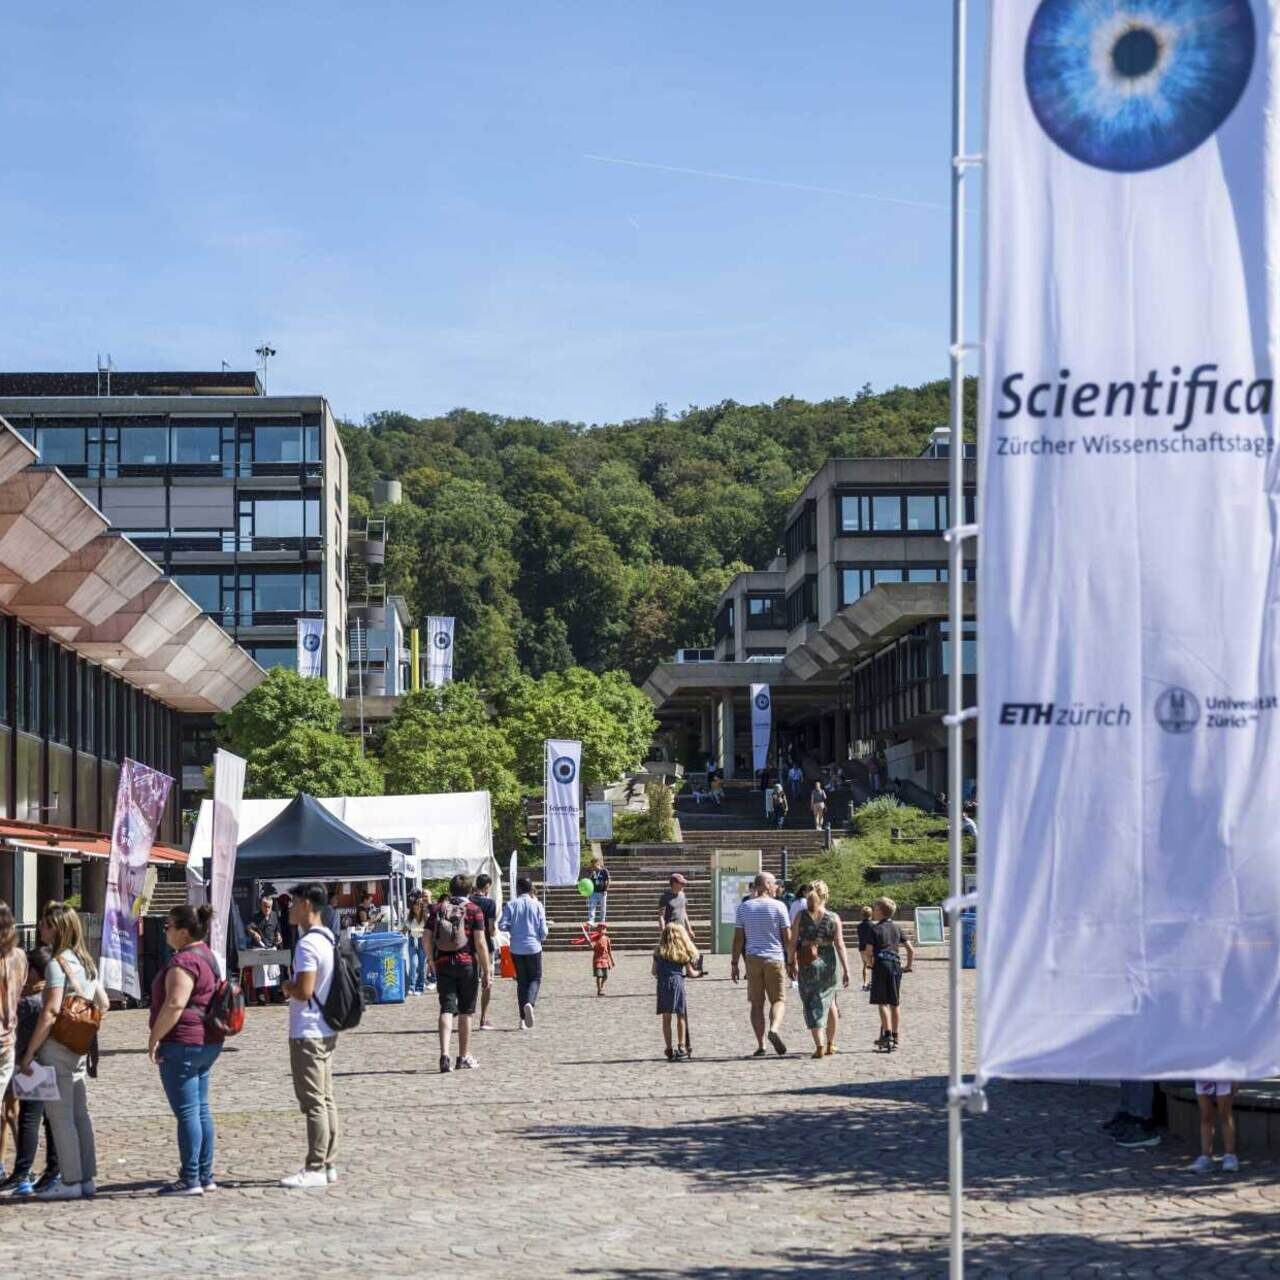 Khoa học: Lễ hội khoa học lớn nhất Thụy Sĩ lần thứ tám diễn ra tại Zurich vào ngày 2 và 3 tháng 2023 năm XNUMX